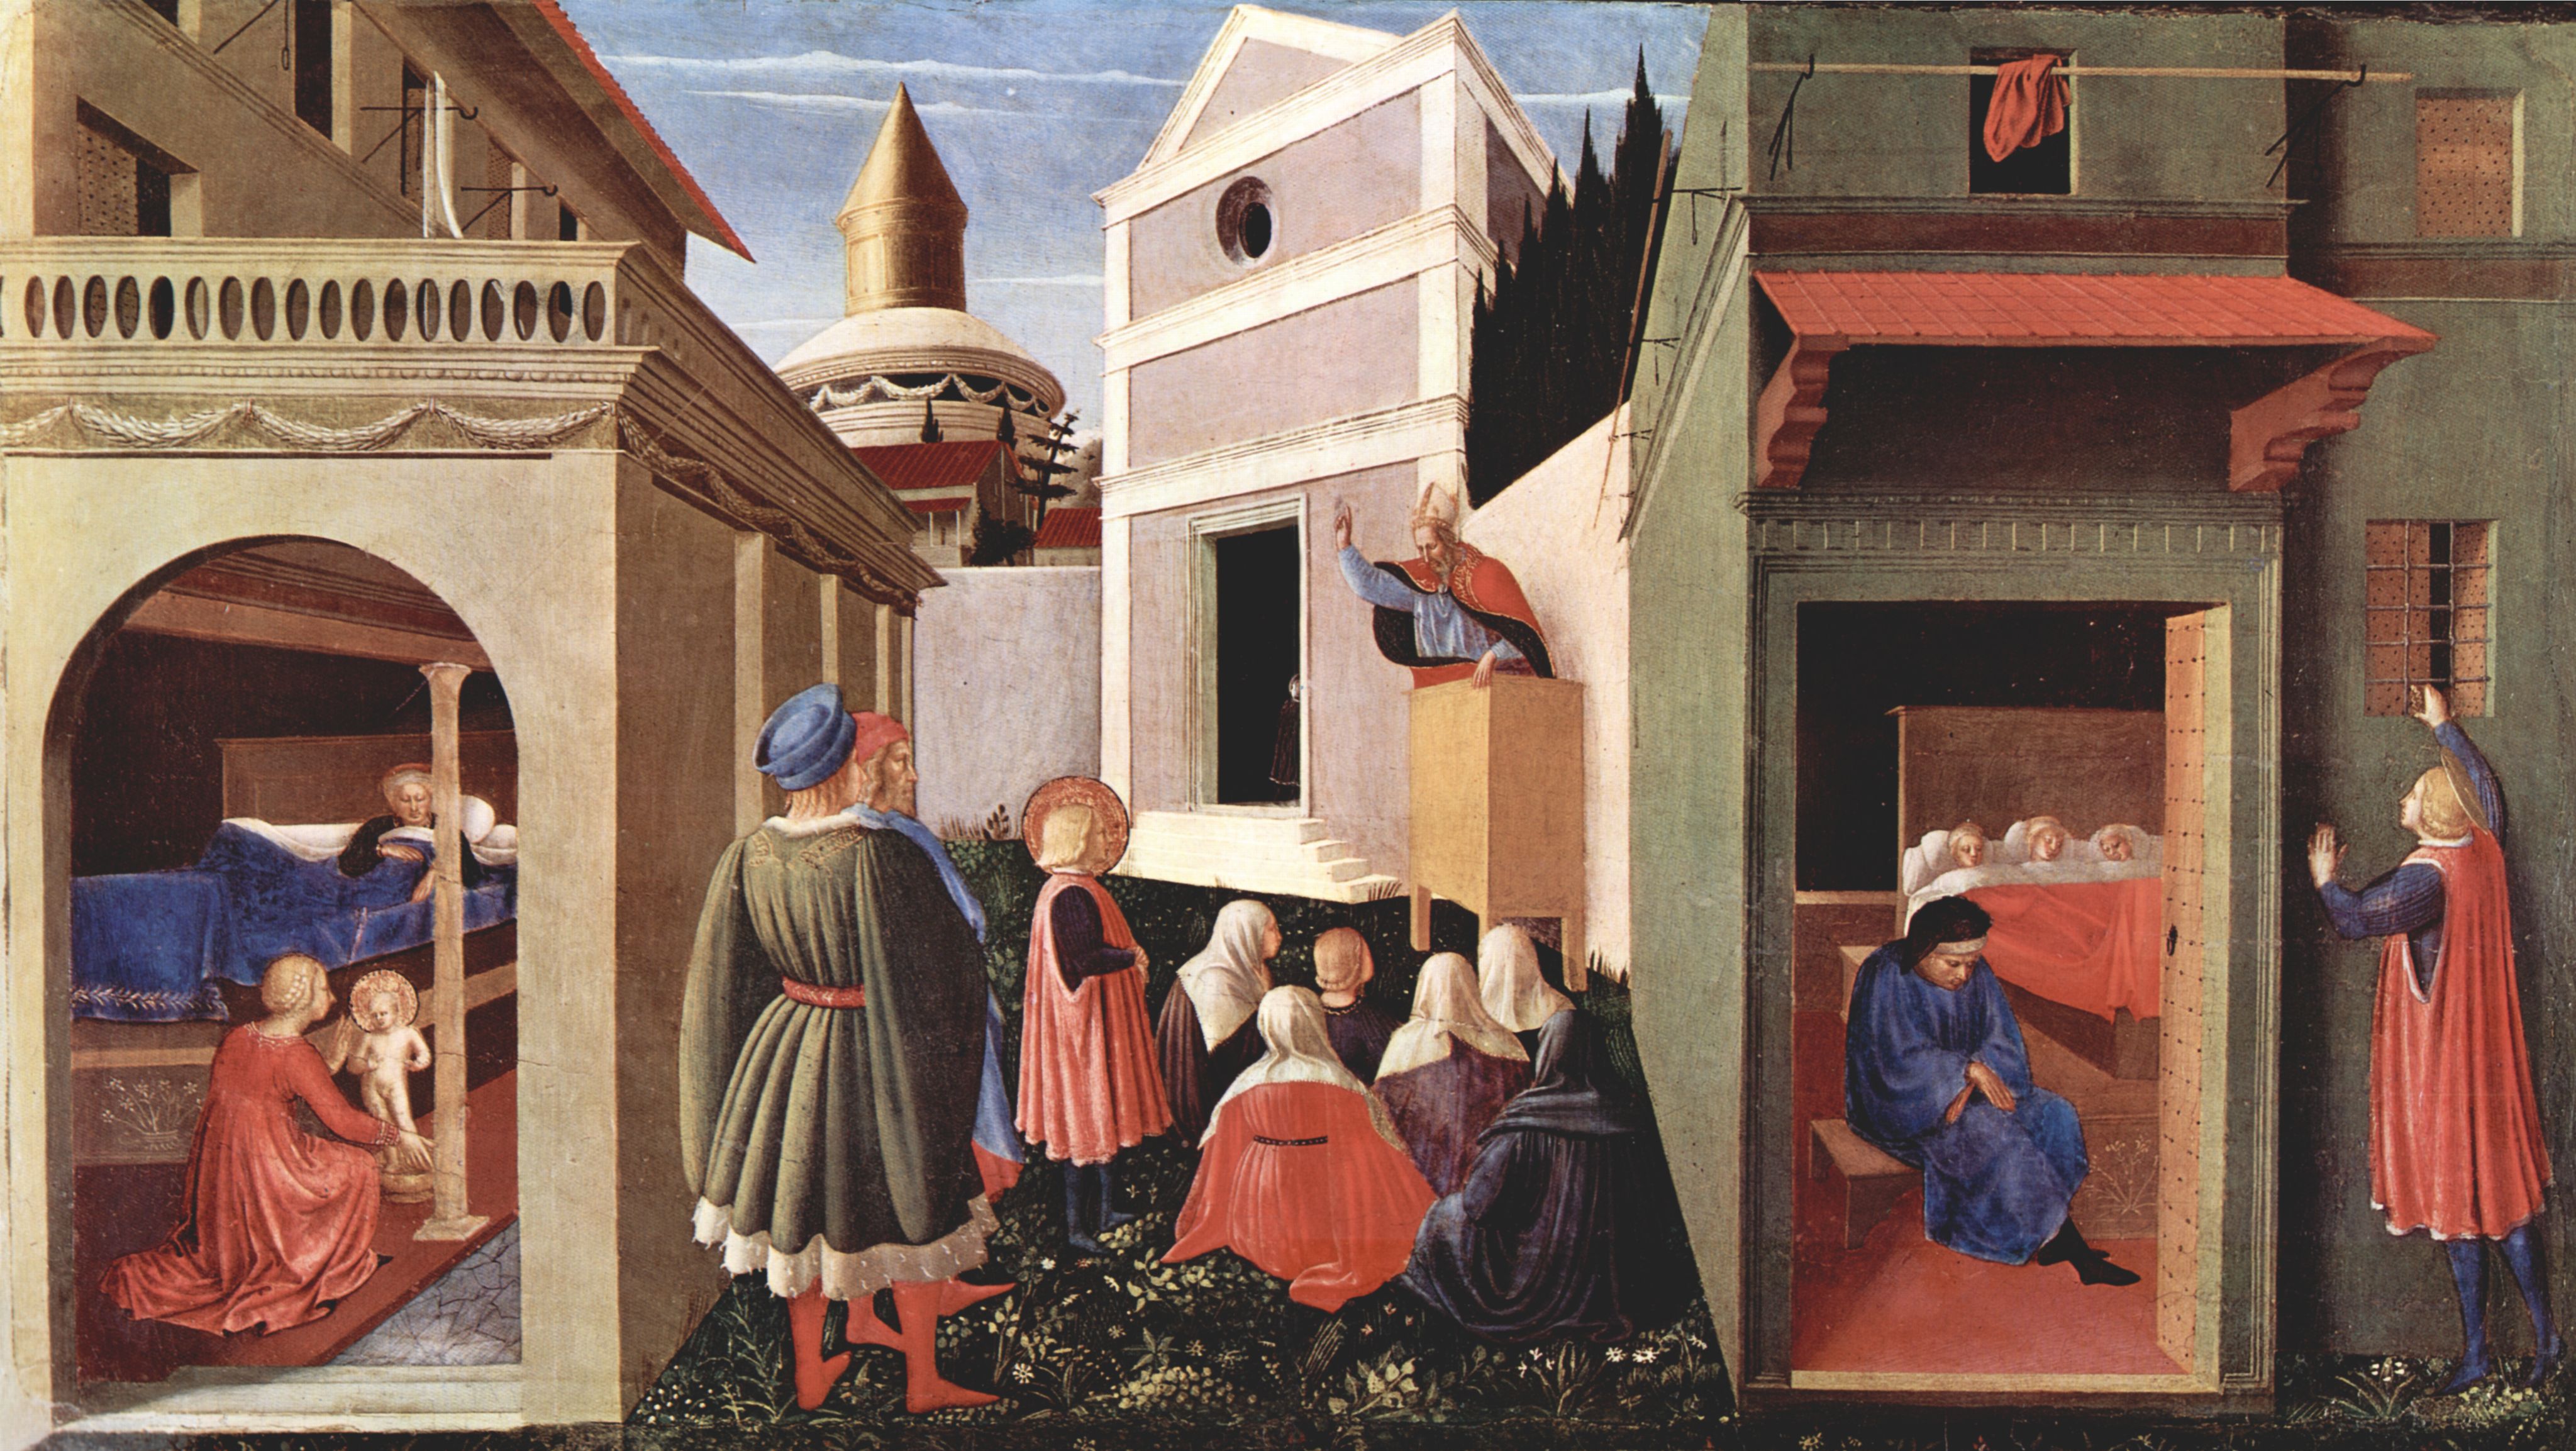 Fra Angelico: Predellatafel des Triptychons von San Domenico in Perugia zum Leben des Hl. Nikolaus von Bari, Szene: Geburt, Erziehung durch den Bischof, N. wirft goldene Kugeln in Zimmer dreier Jungfrauen